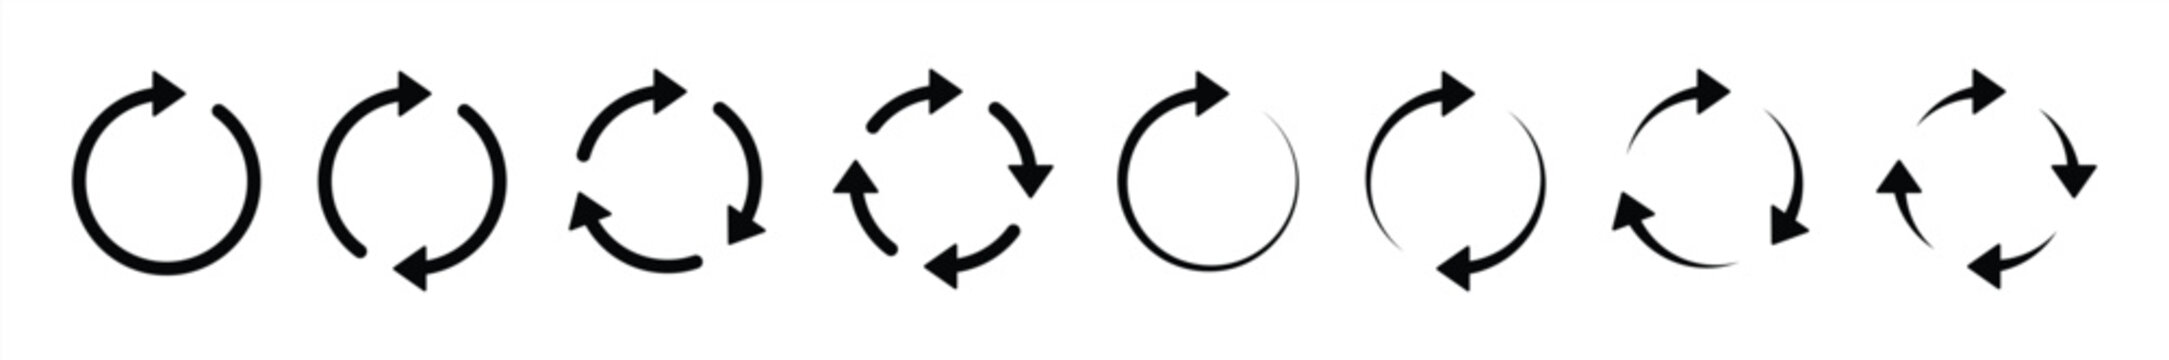 circle arrow icon set. circular arrow icon, refresh, reload arrow icon symbol sign, vector illustration